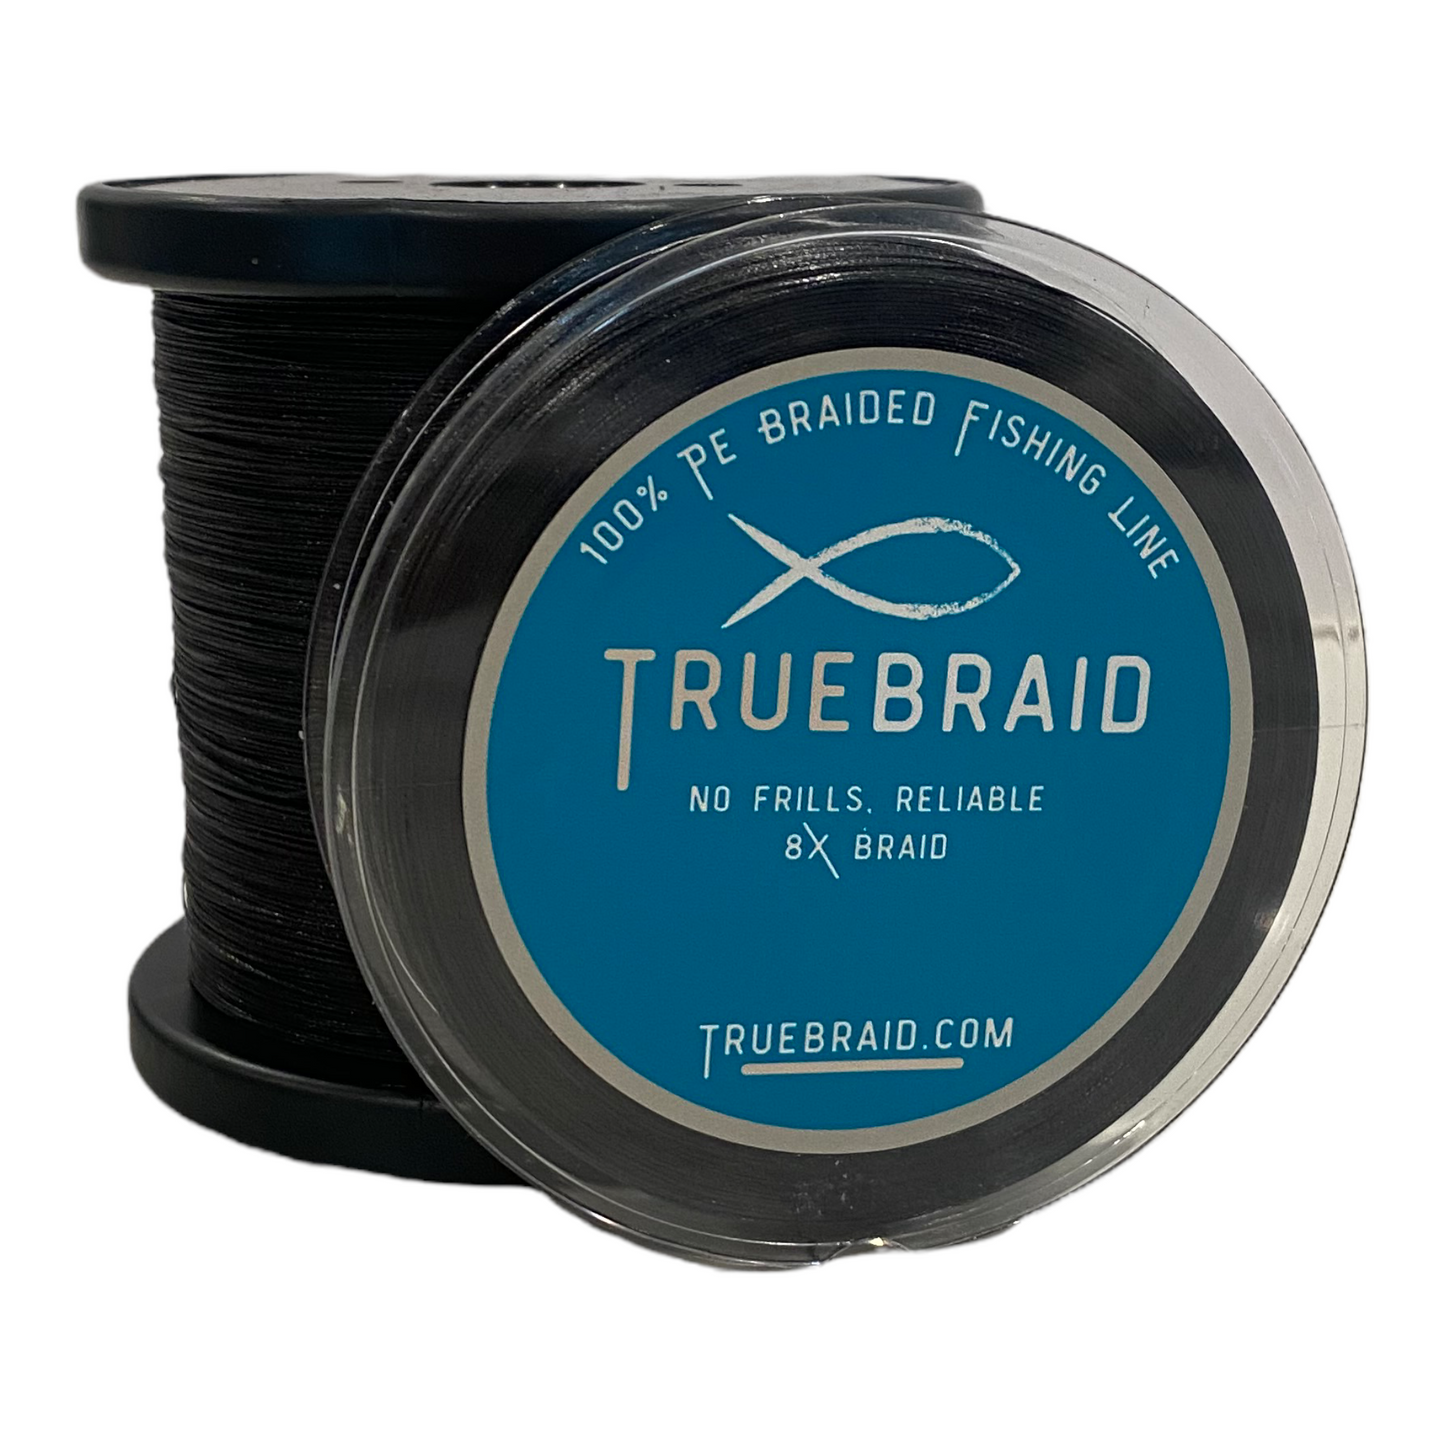 SX8 Black Braided Line – True Braid